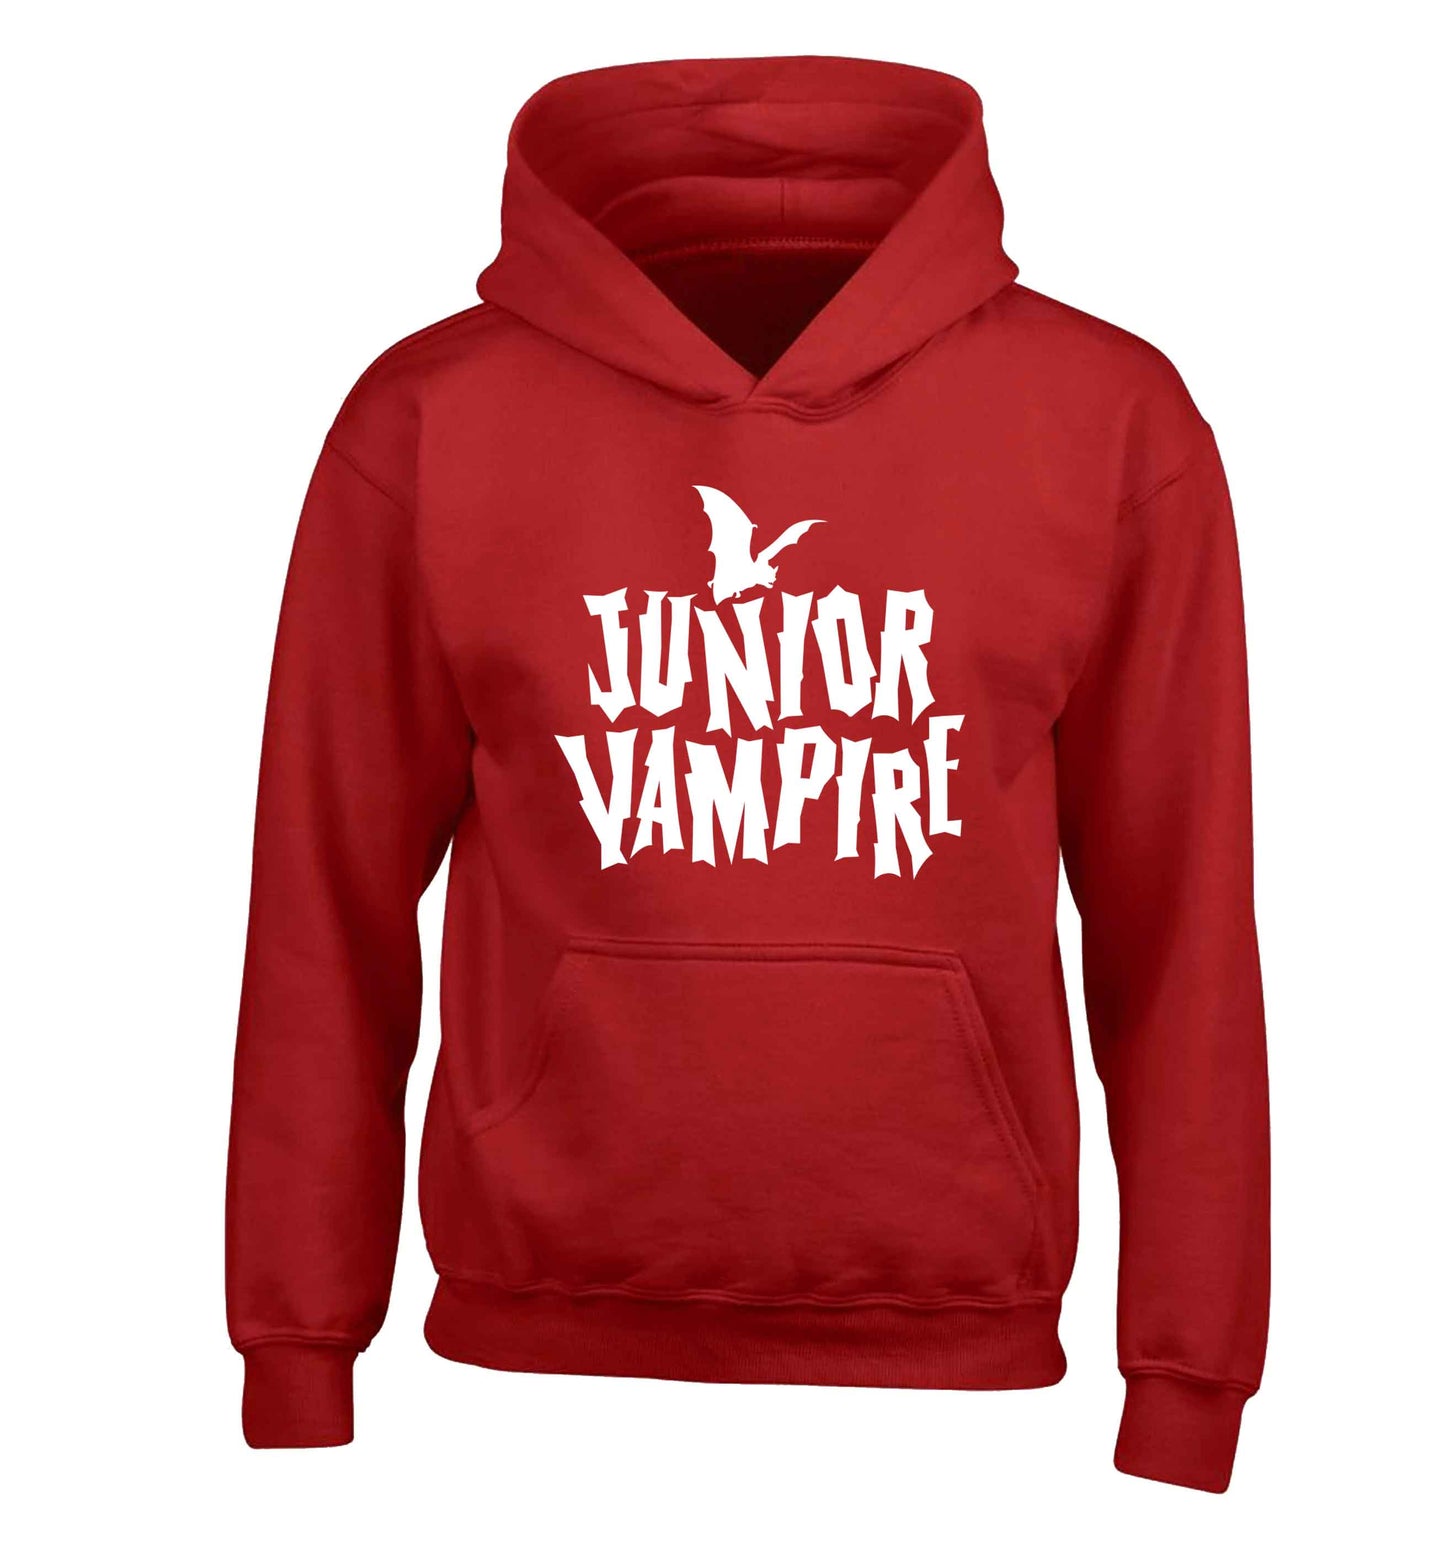 Junior vampire children's red hoodie 12-13 Years